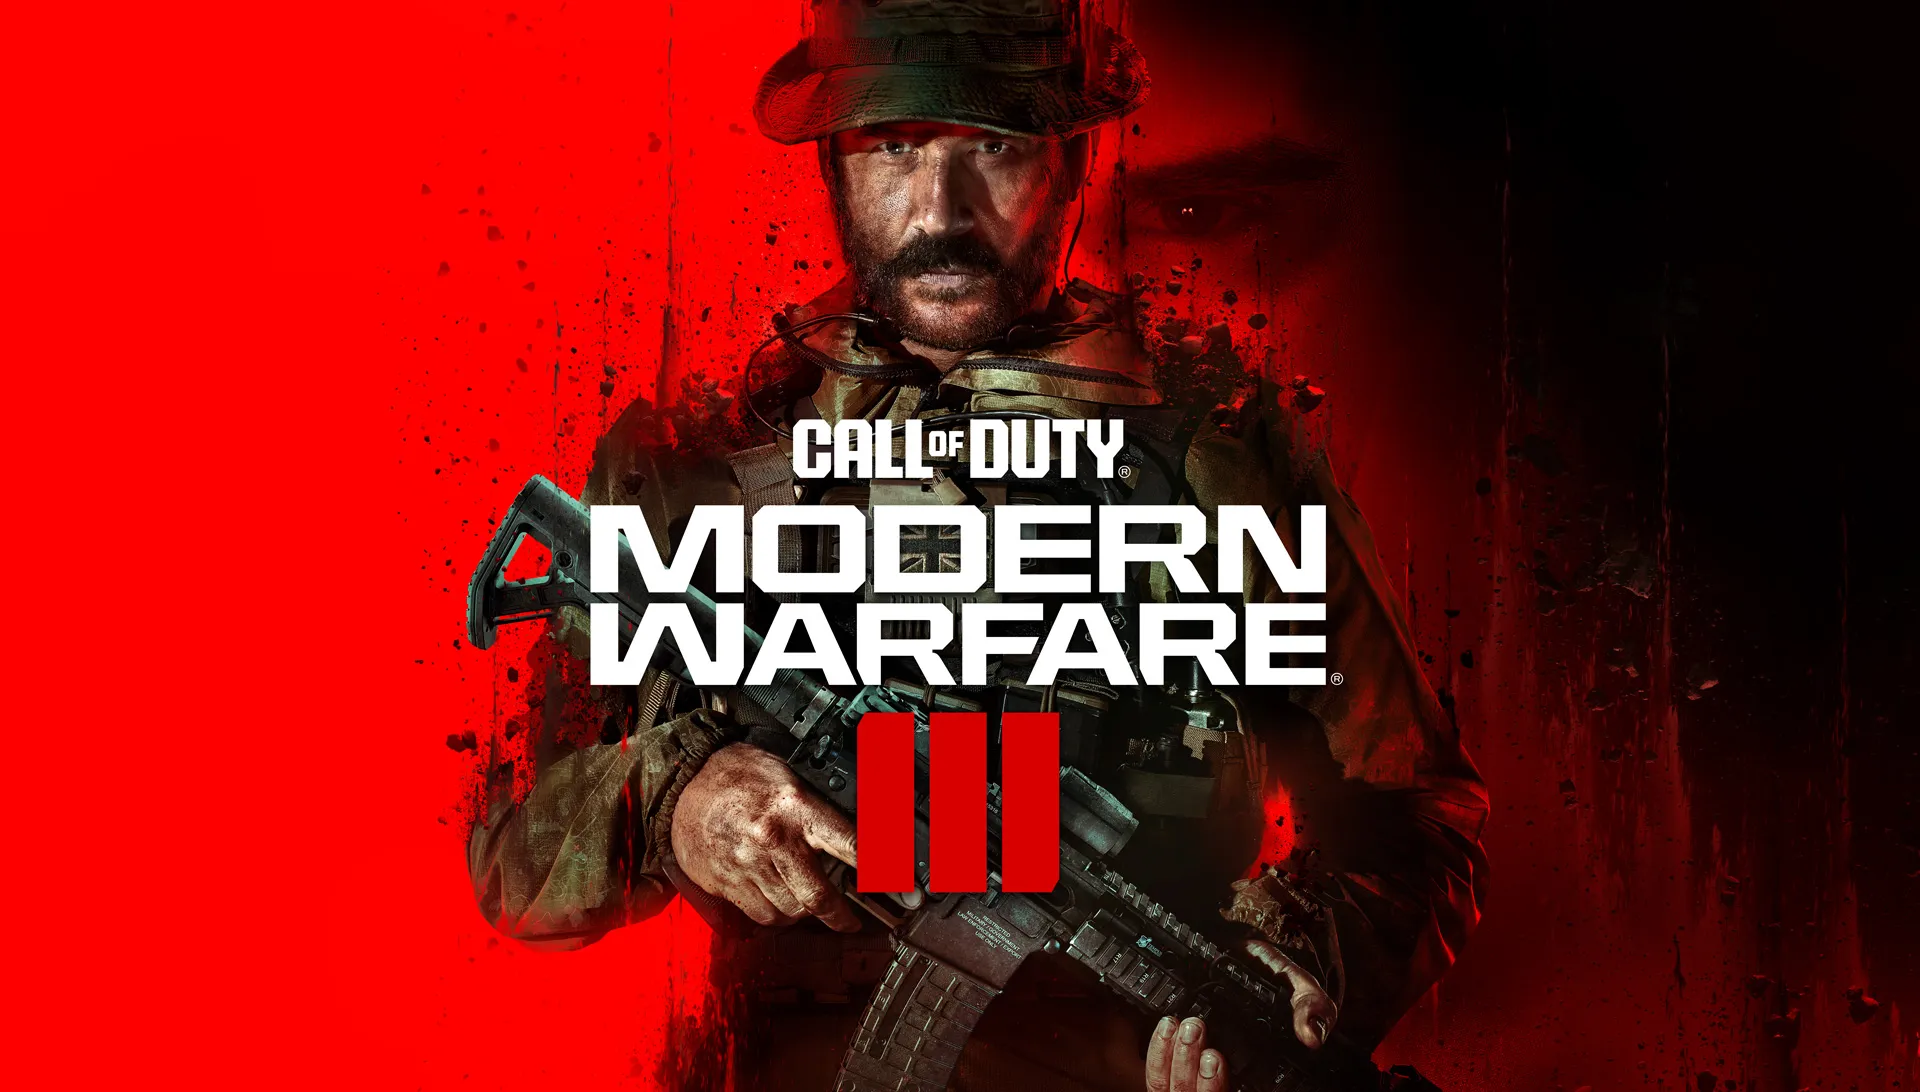 Gracze Call of Duty domagają się usunięcia najbardziej irytującej kombinacji broni przed premierą gry